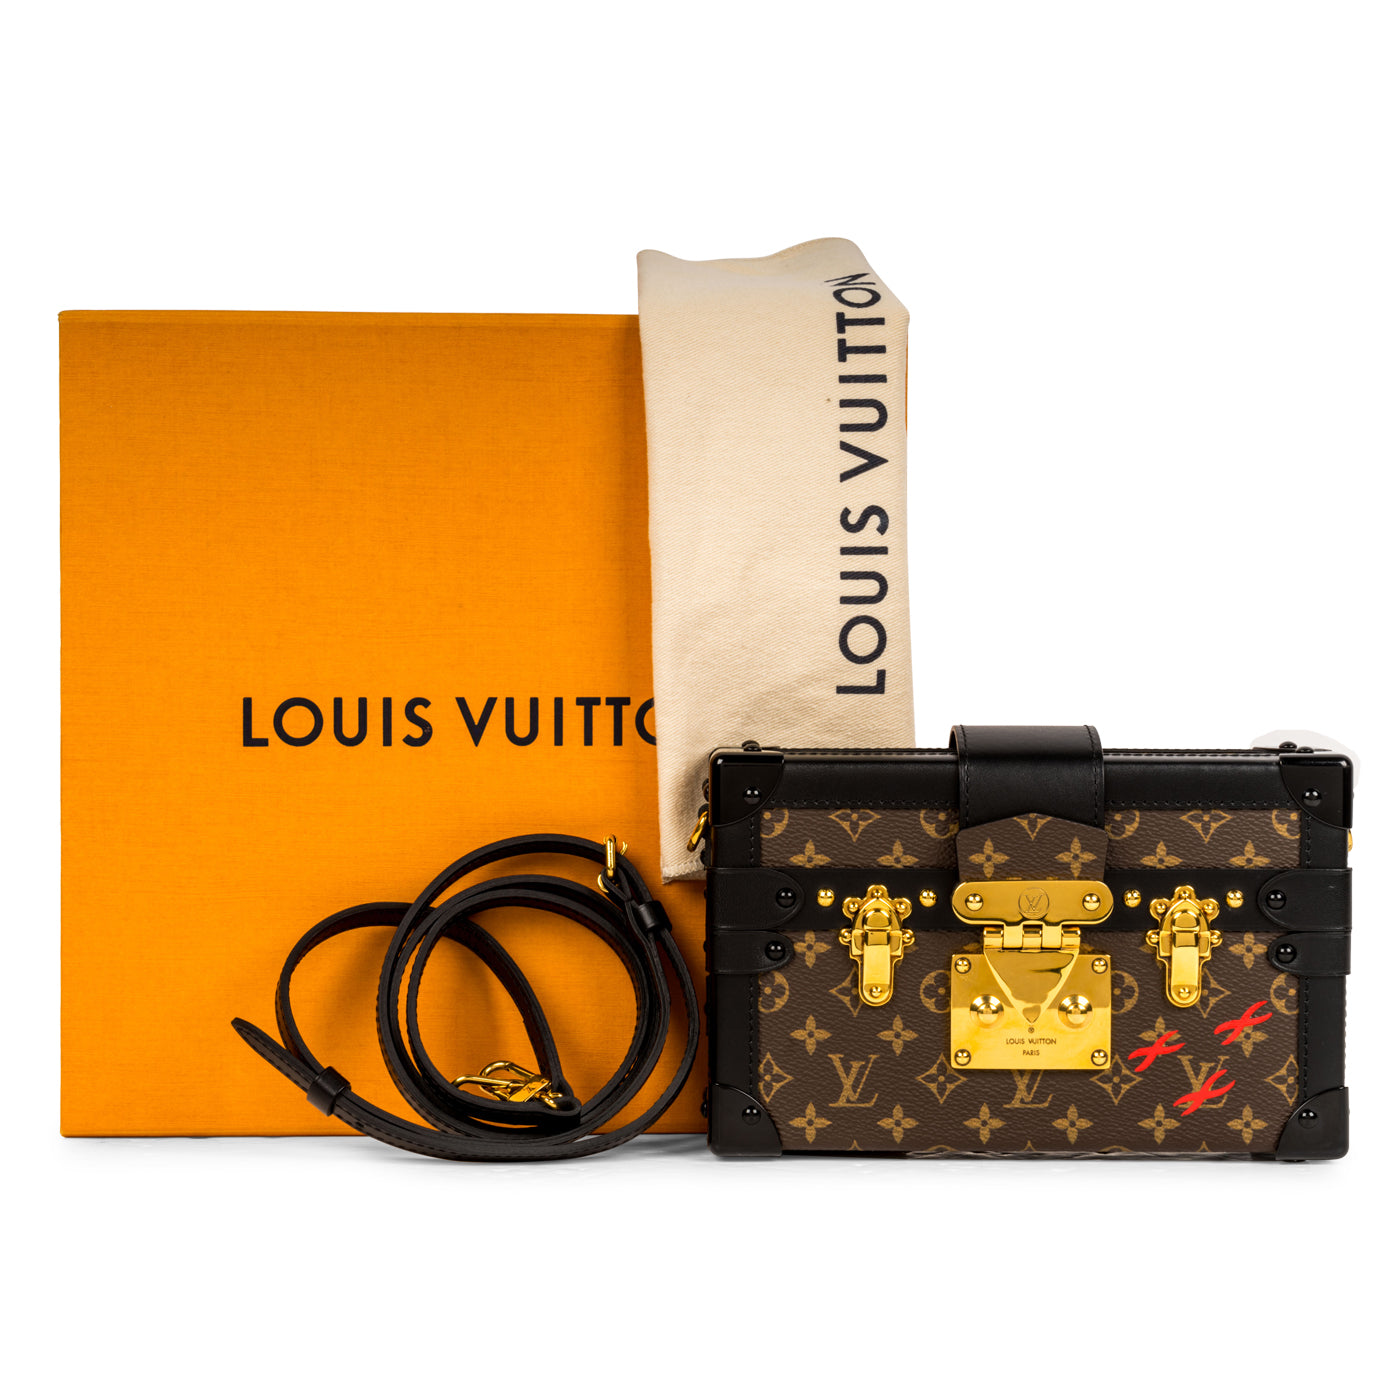 Petite malle cloth handbag Louis Vuitton Brown in Cloth - 25087127